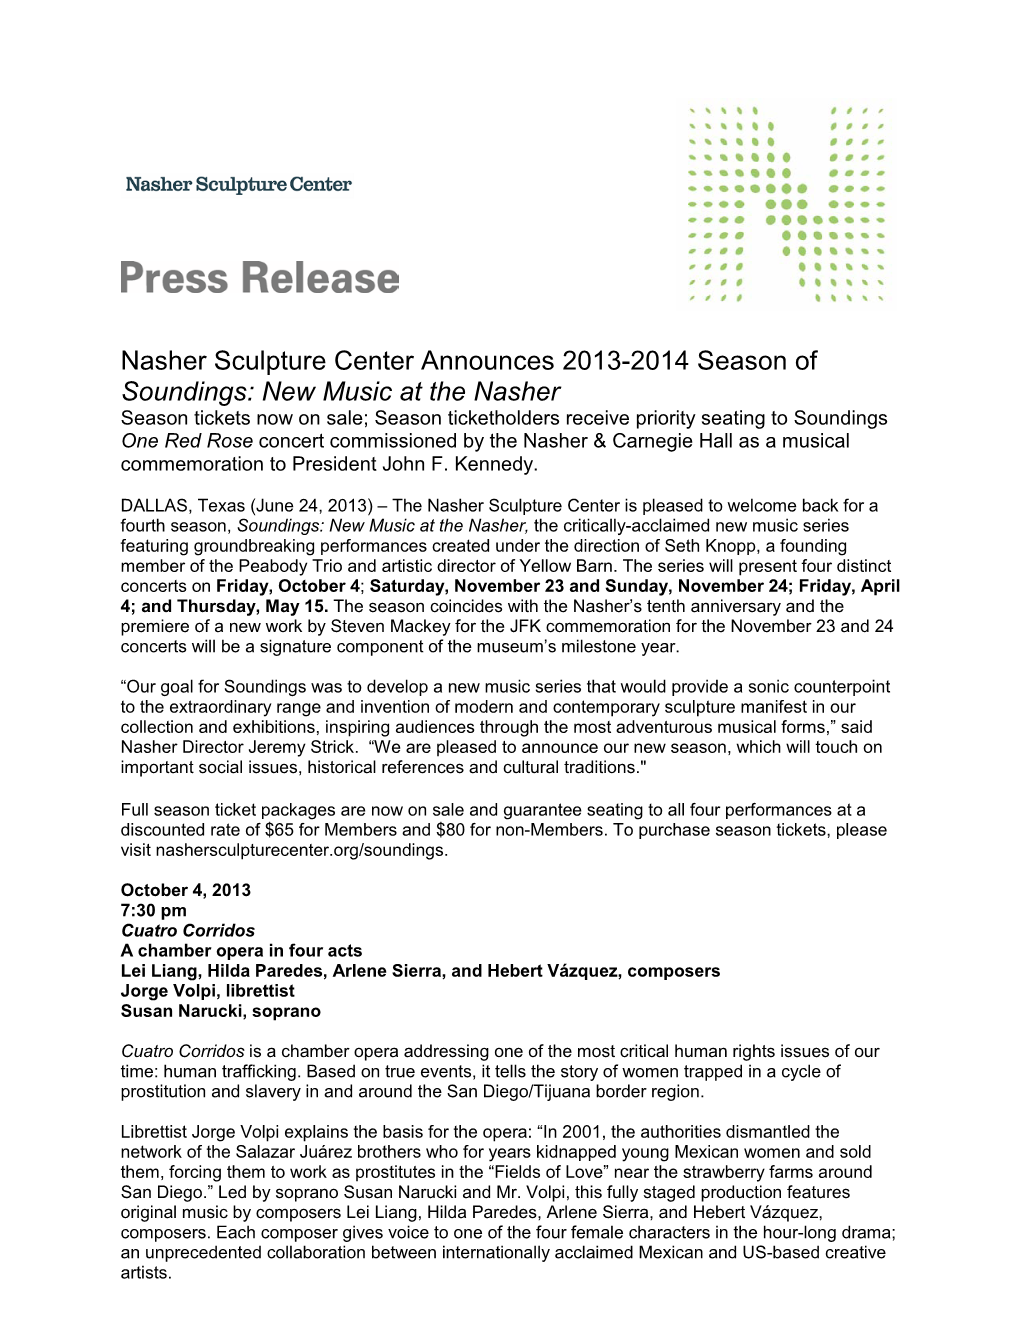 Nasher Sculpture Center Announces 2013-2014 Season of Soundings